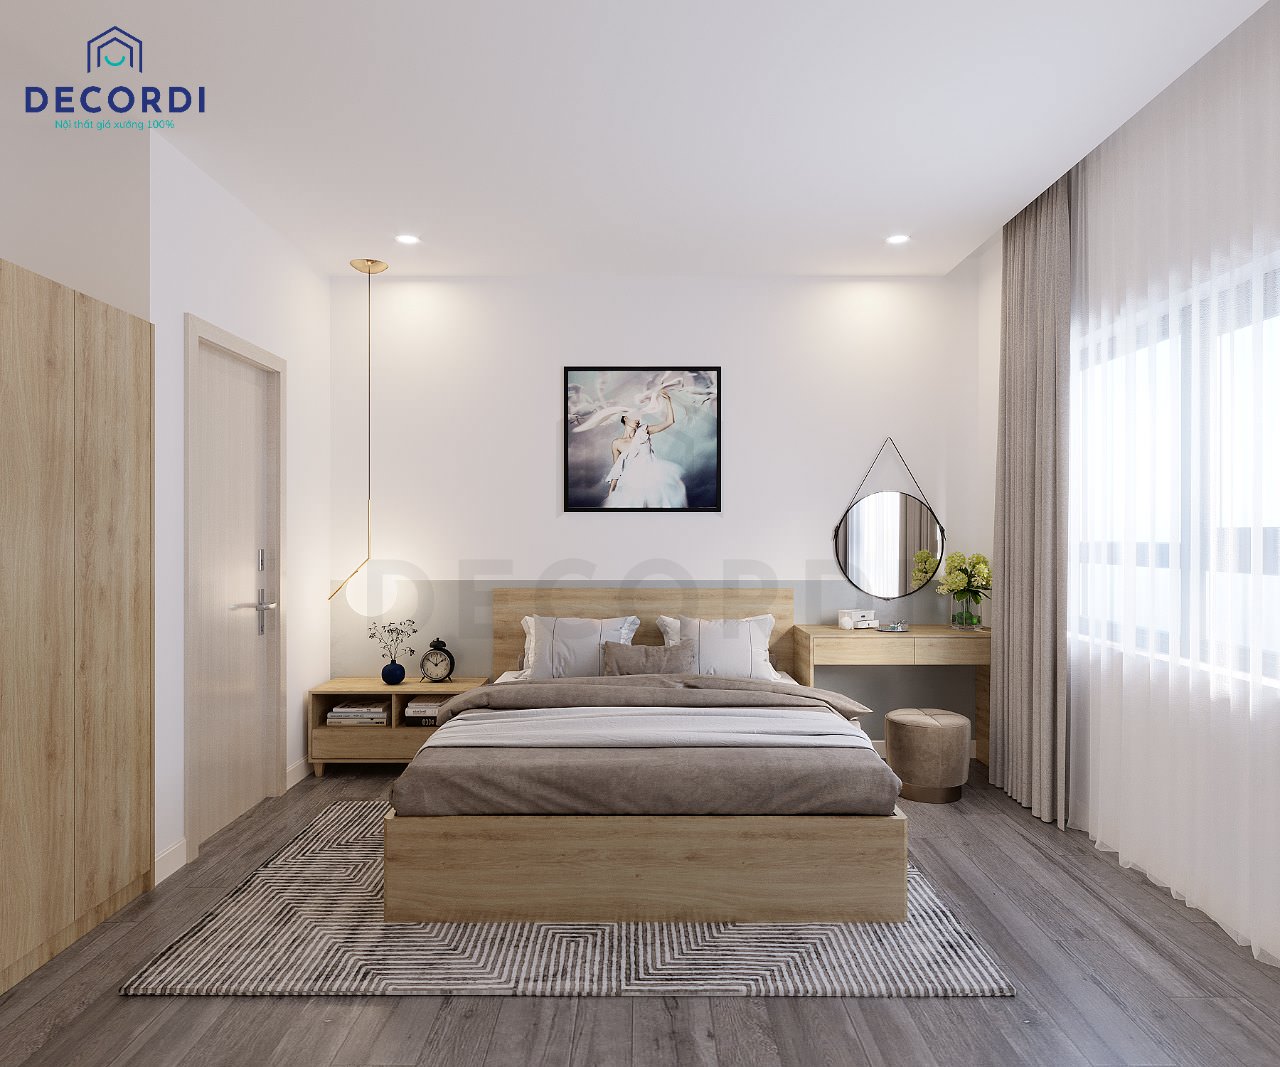 Bộ nội thất phòng ngủ 12m2 đơn giản chất liệu gỗ công nghiệp bền đẹp, tiện nghi cho 2 vợ chồng